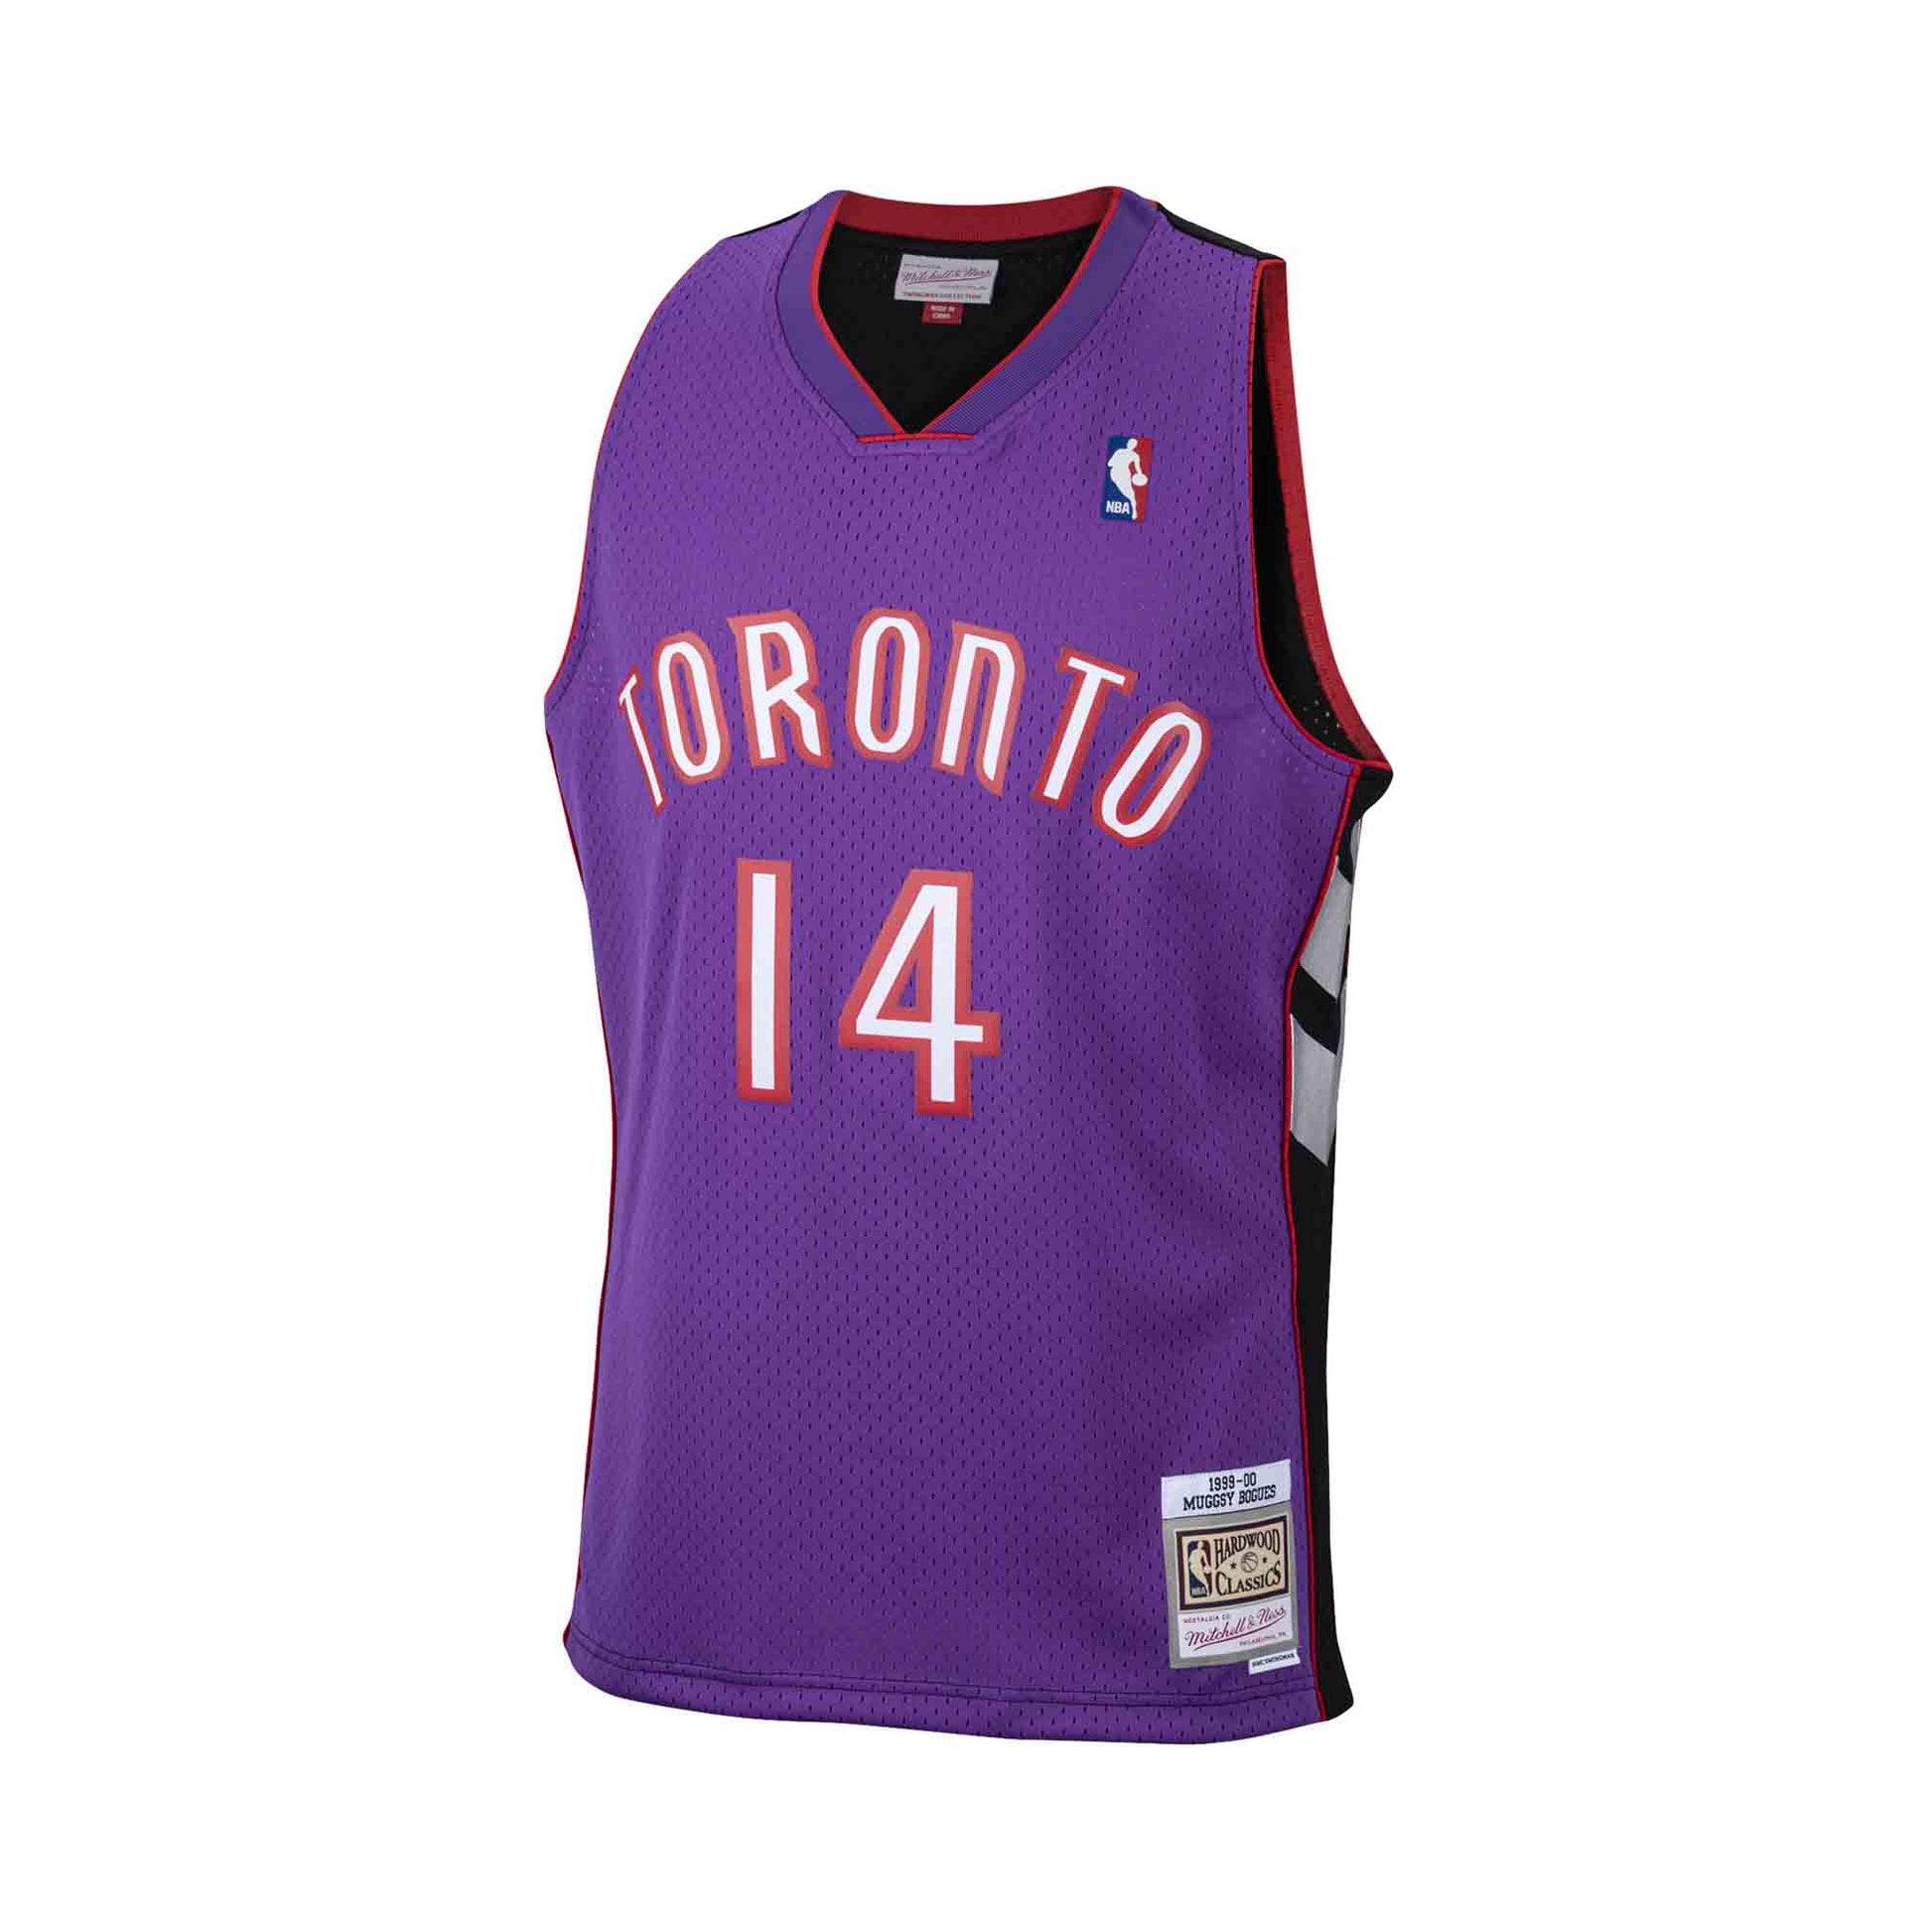 Toronto Raptors Swingman Charles Oakley Jersey Size XL for Sale